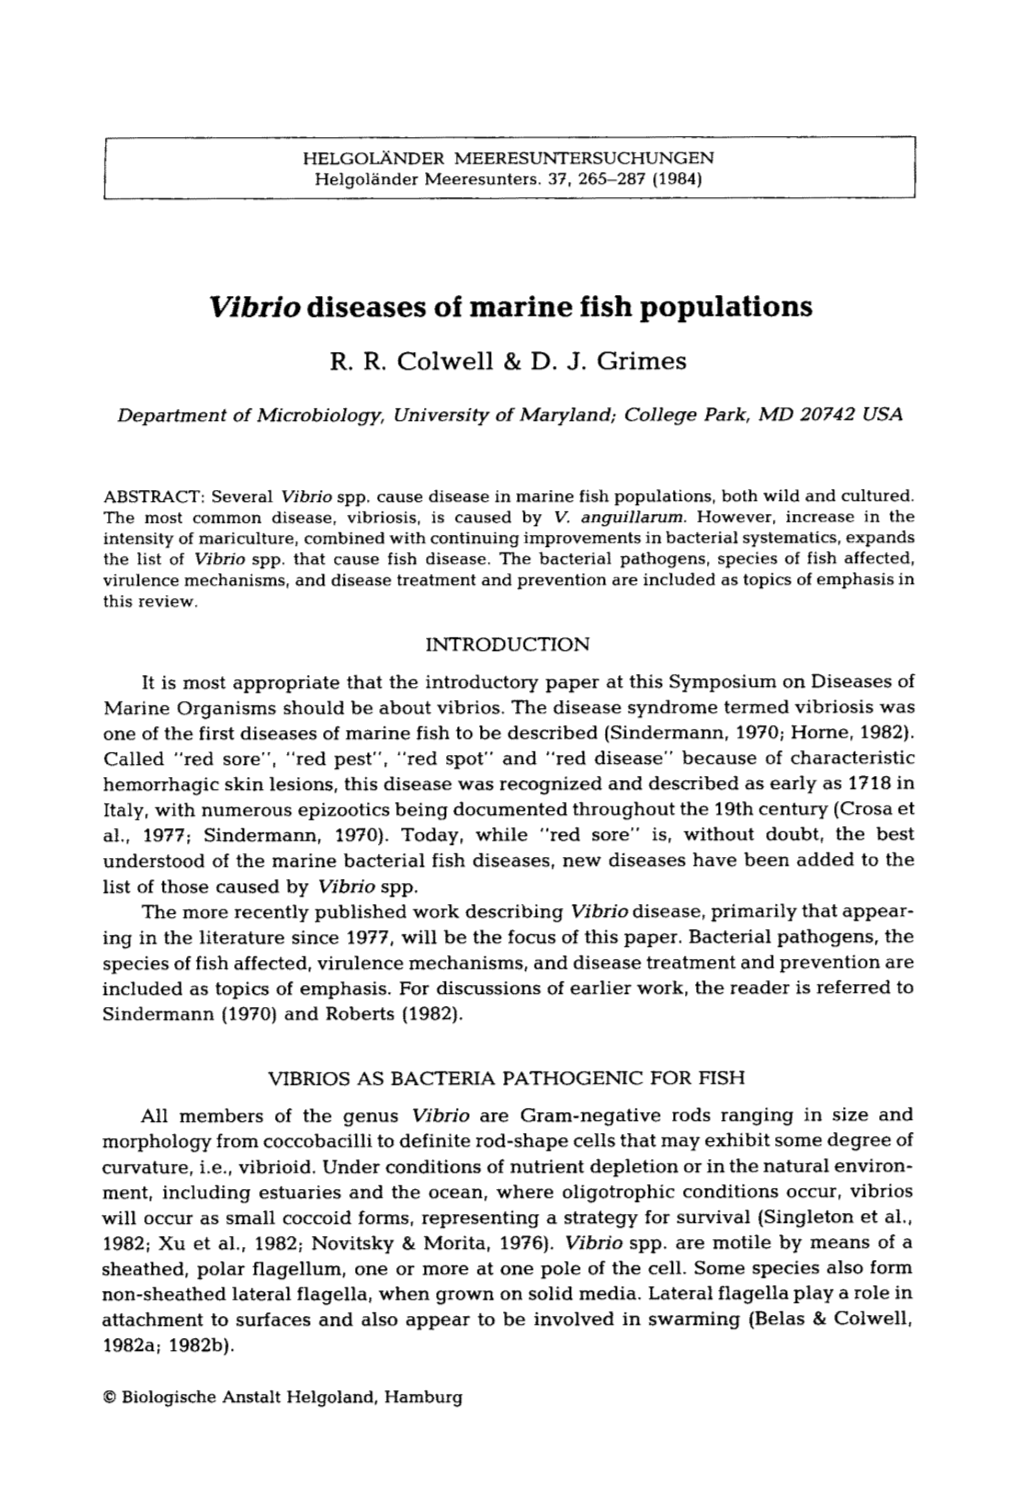 Vibrio Diseases of Marine Fish Populations